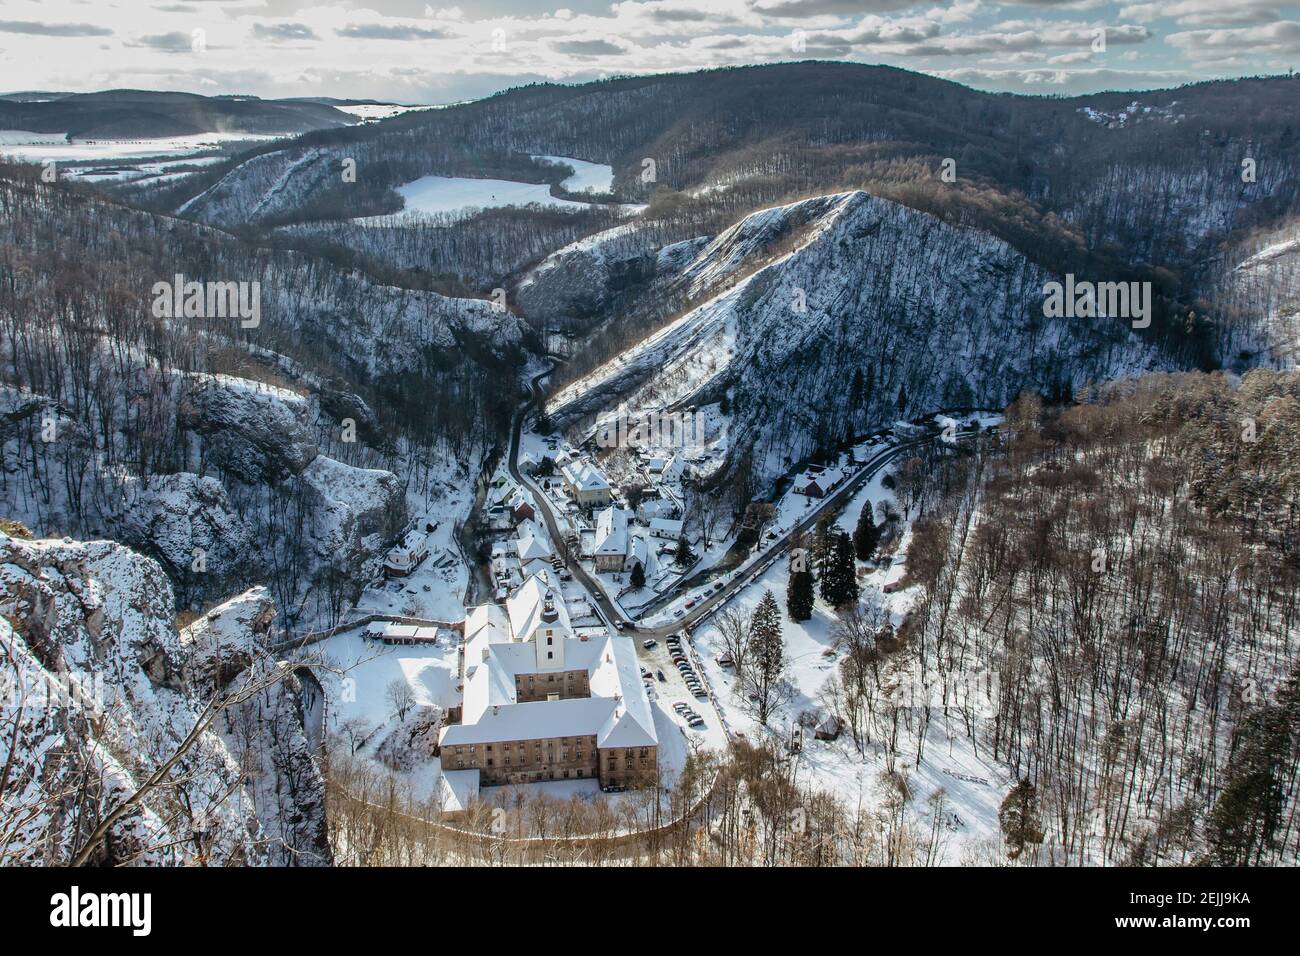 Vista aérea de invierno de Svaty Jan pod Skalou, pequeño pueblo pintoresco en Bohemia Central, República Checa. Monasterio escondido bajo acantilados y rocas en Foto de stock